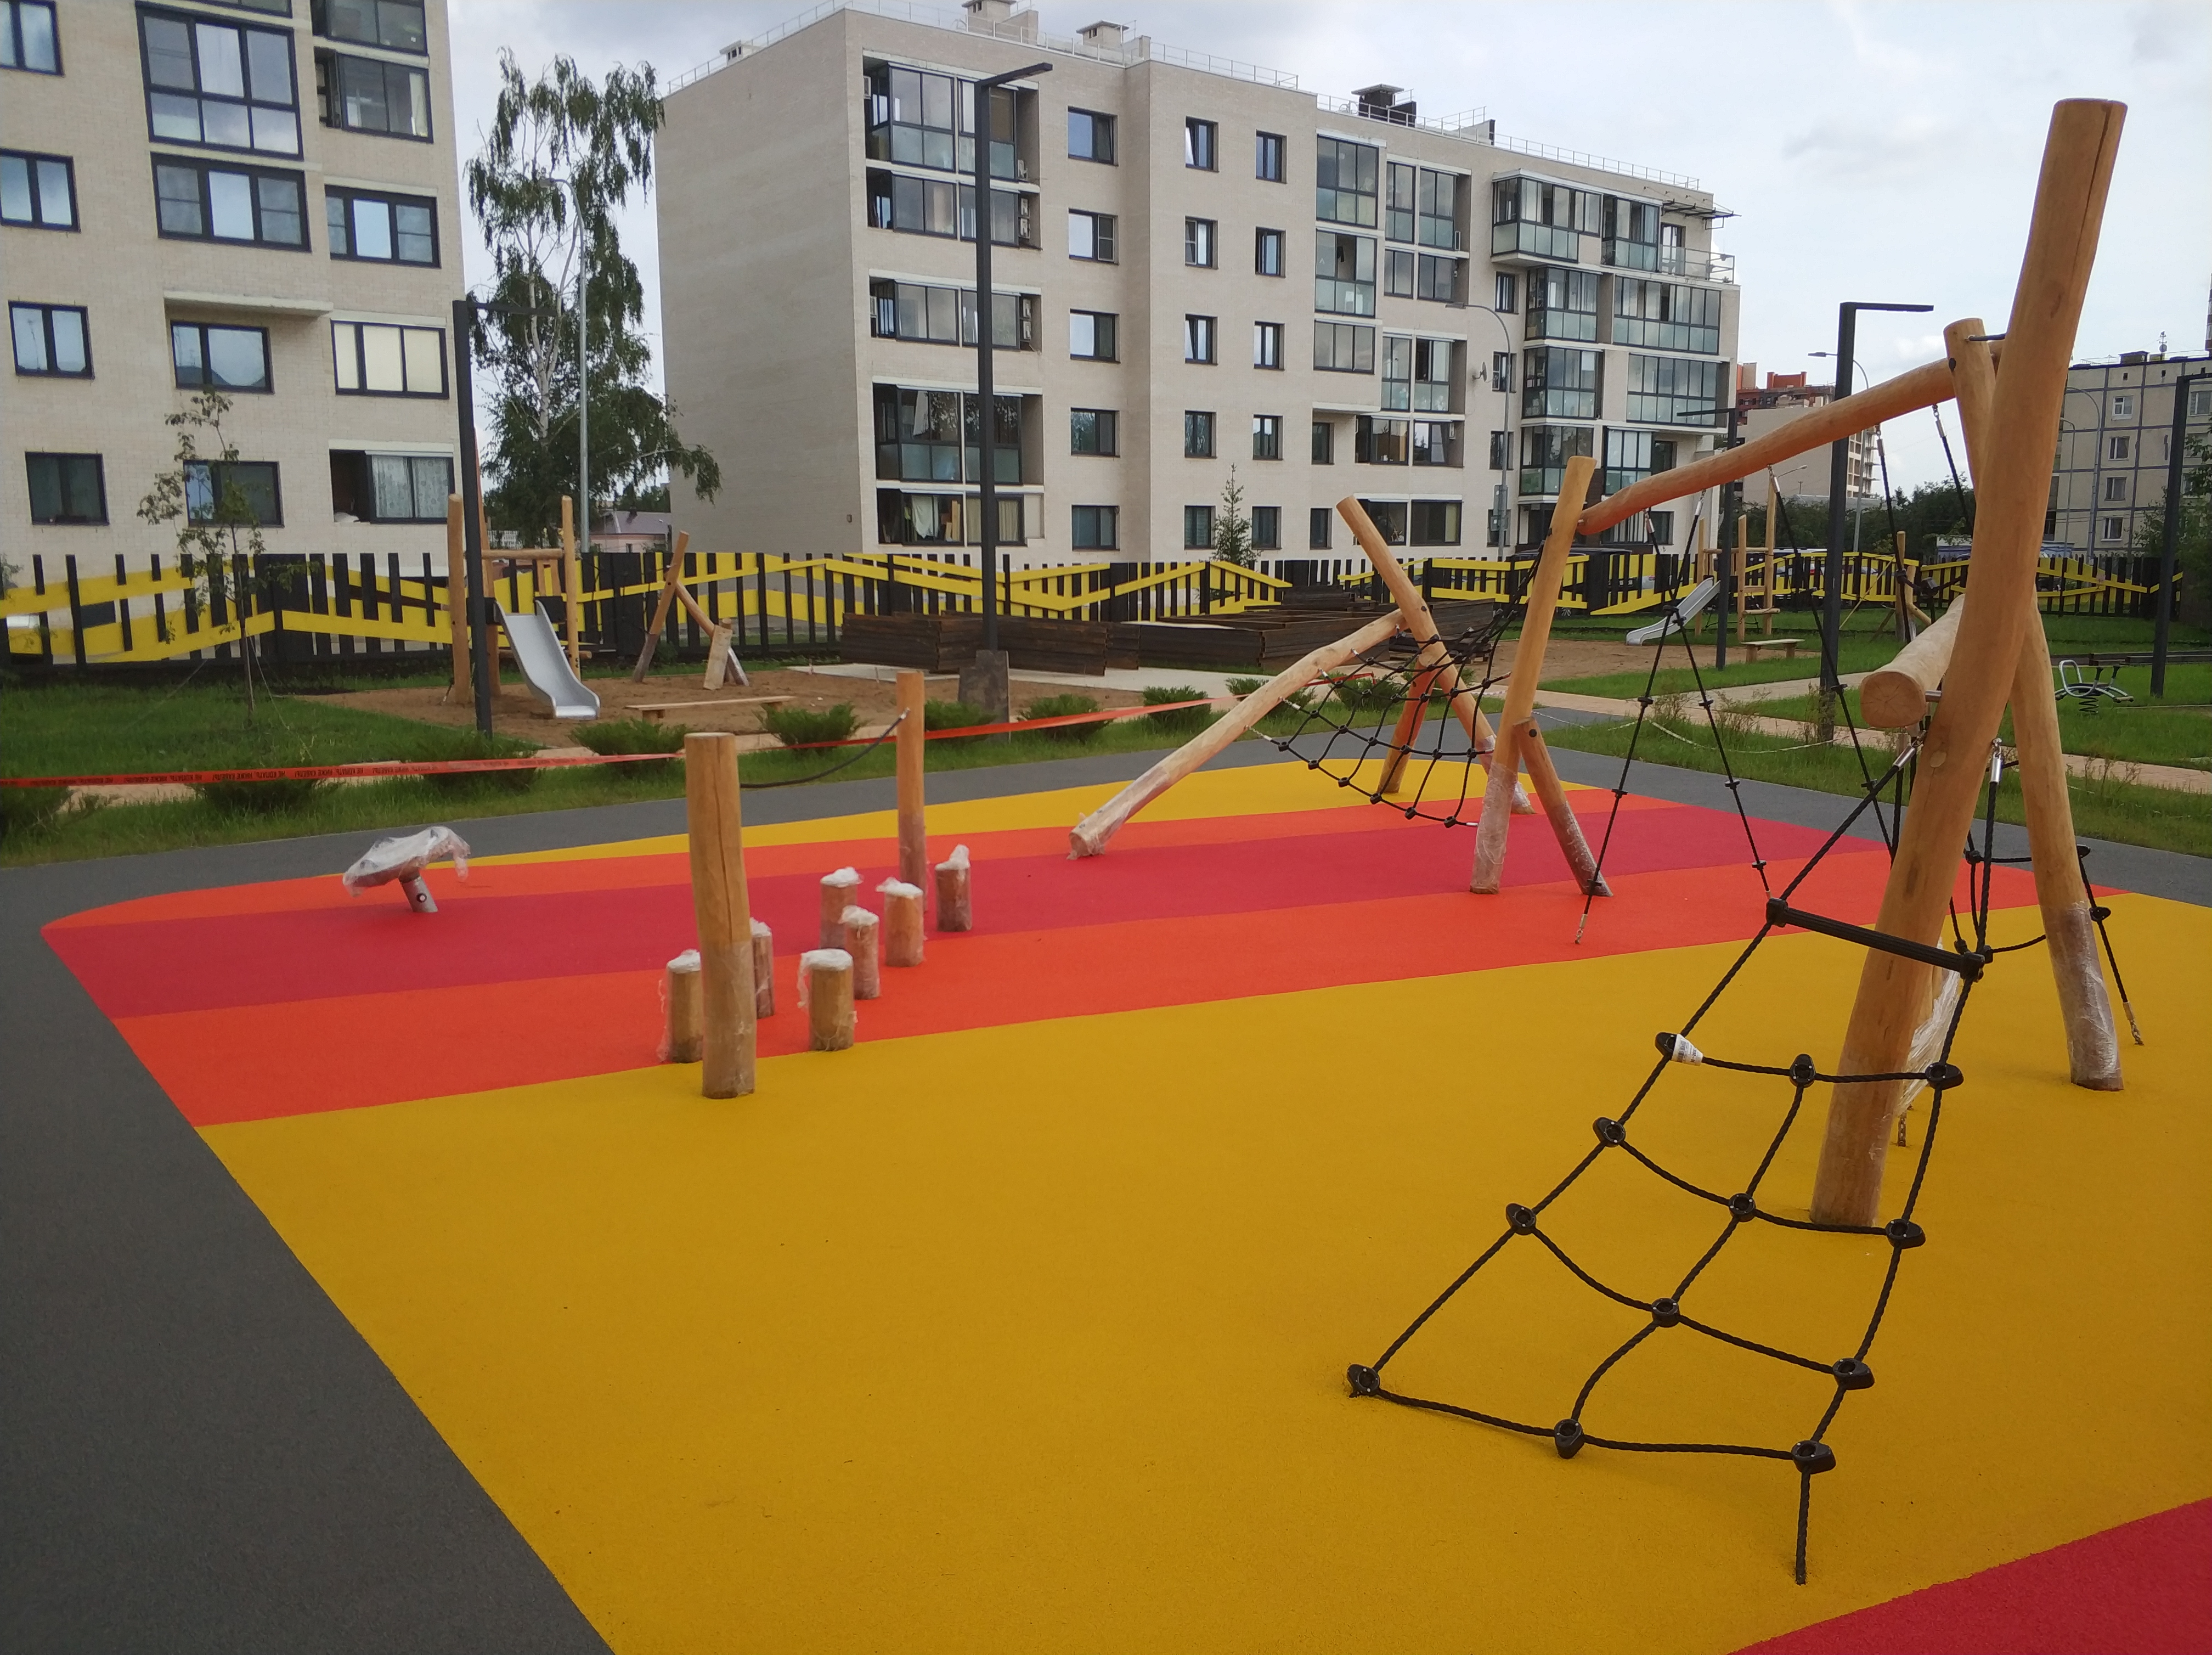 Безопасность и комфорт детей на детских площадках с резиновым покрытием